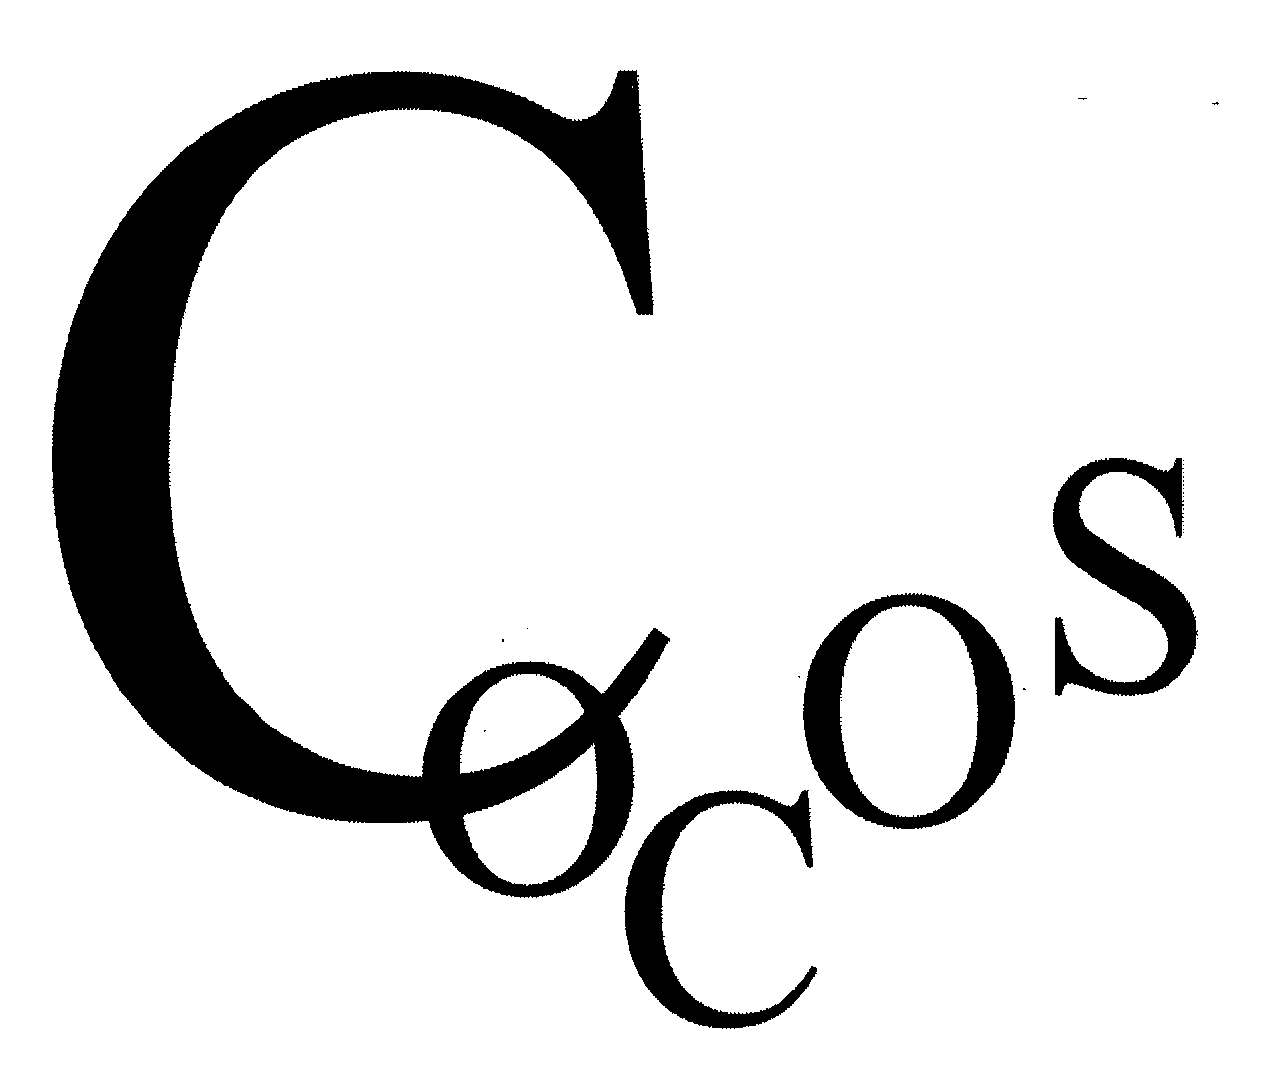 Trademark Logo COCOS